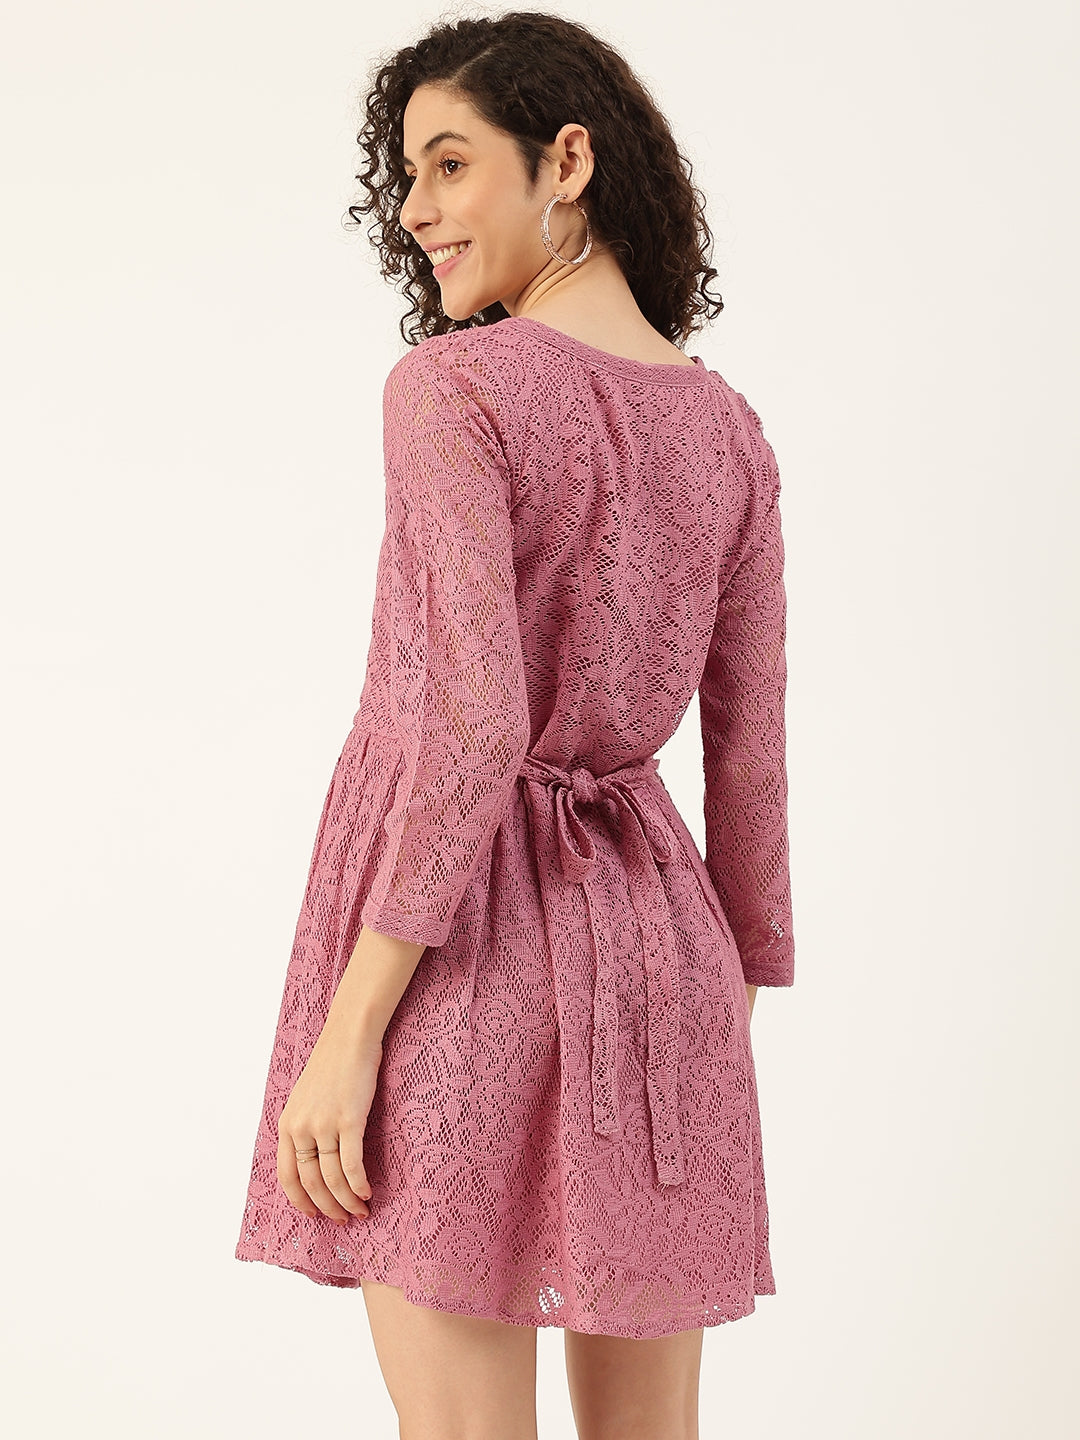 Women's Lavender Net Dress - Maaesa